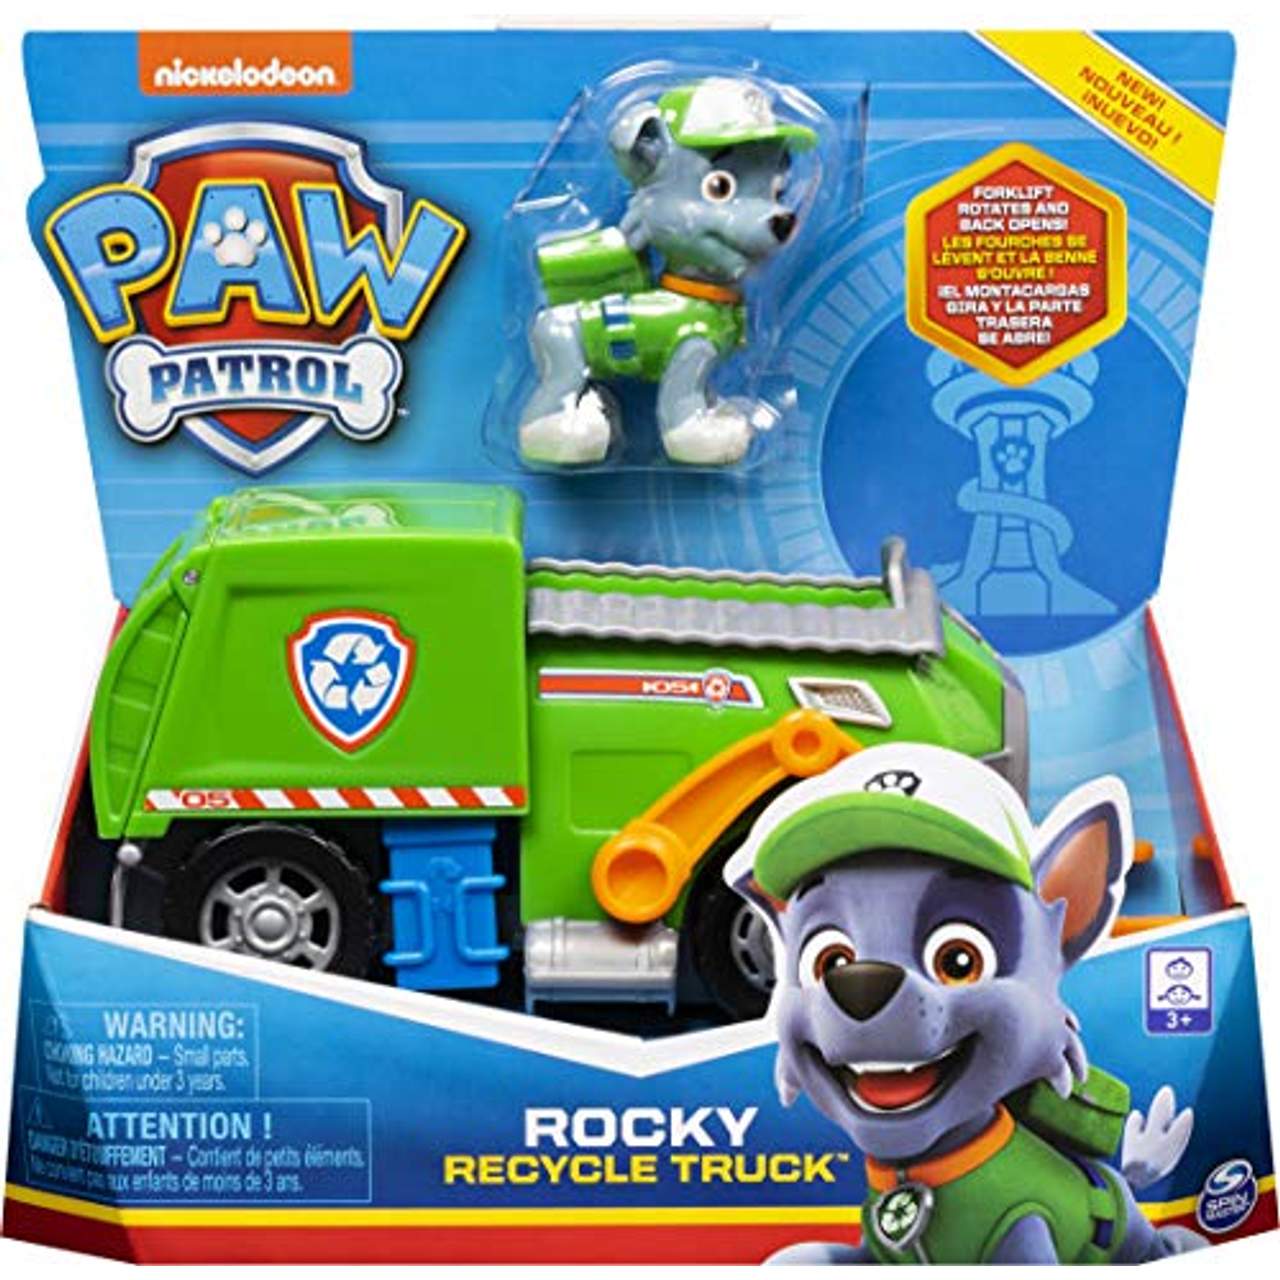 PAW Patrol 6052310- Rockys Recycling